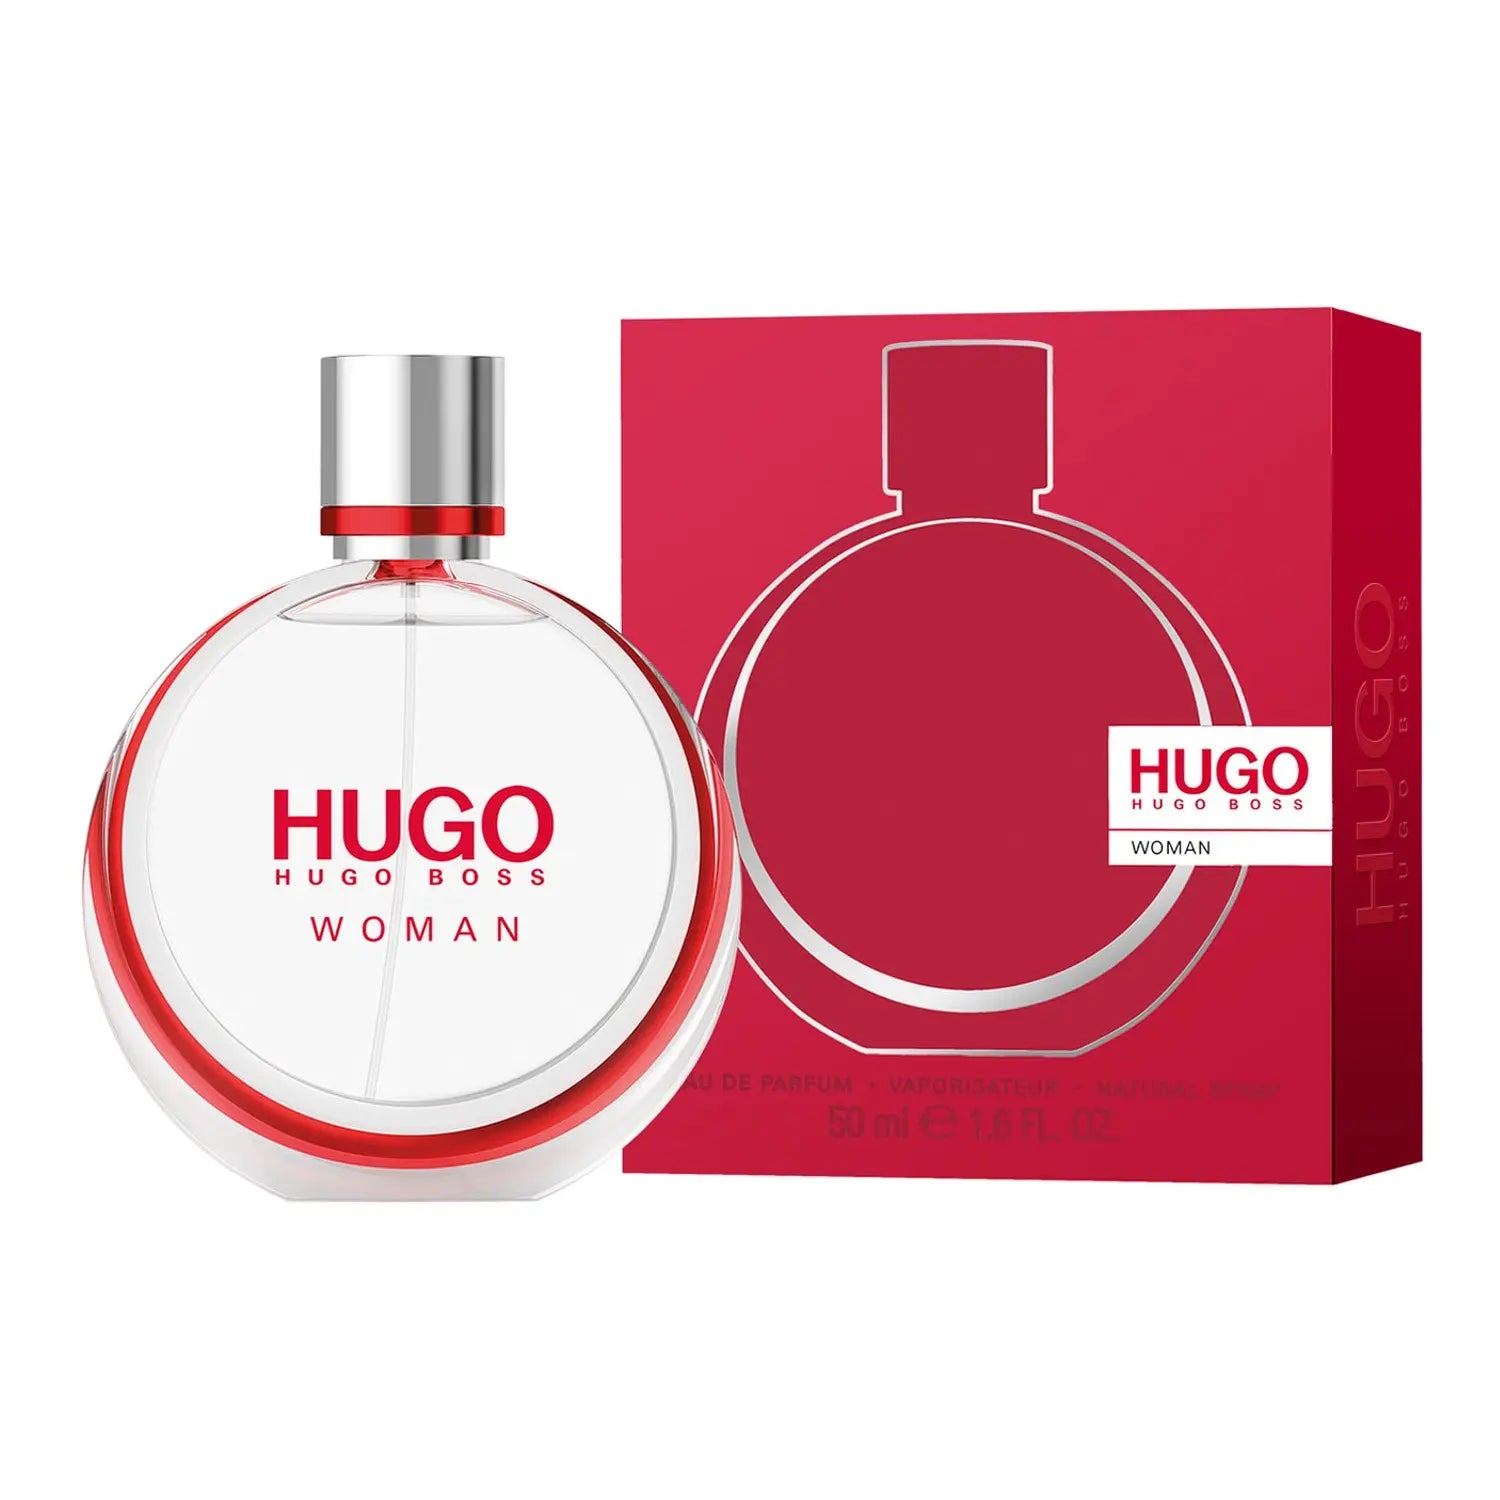 Hugo Woman Eau de Parfum by Hugo Boss 1.6 oz EDP Spray for Women